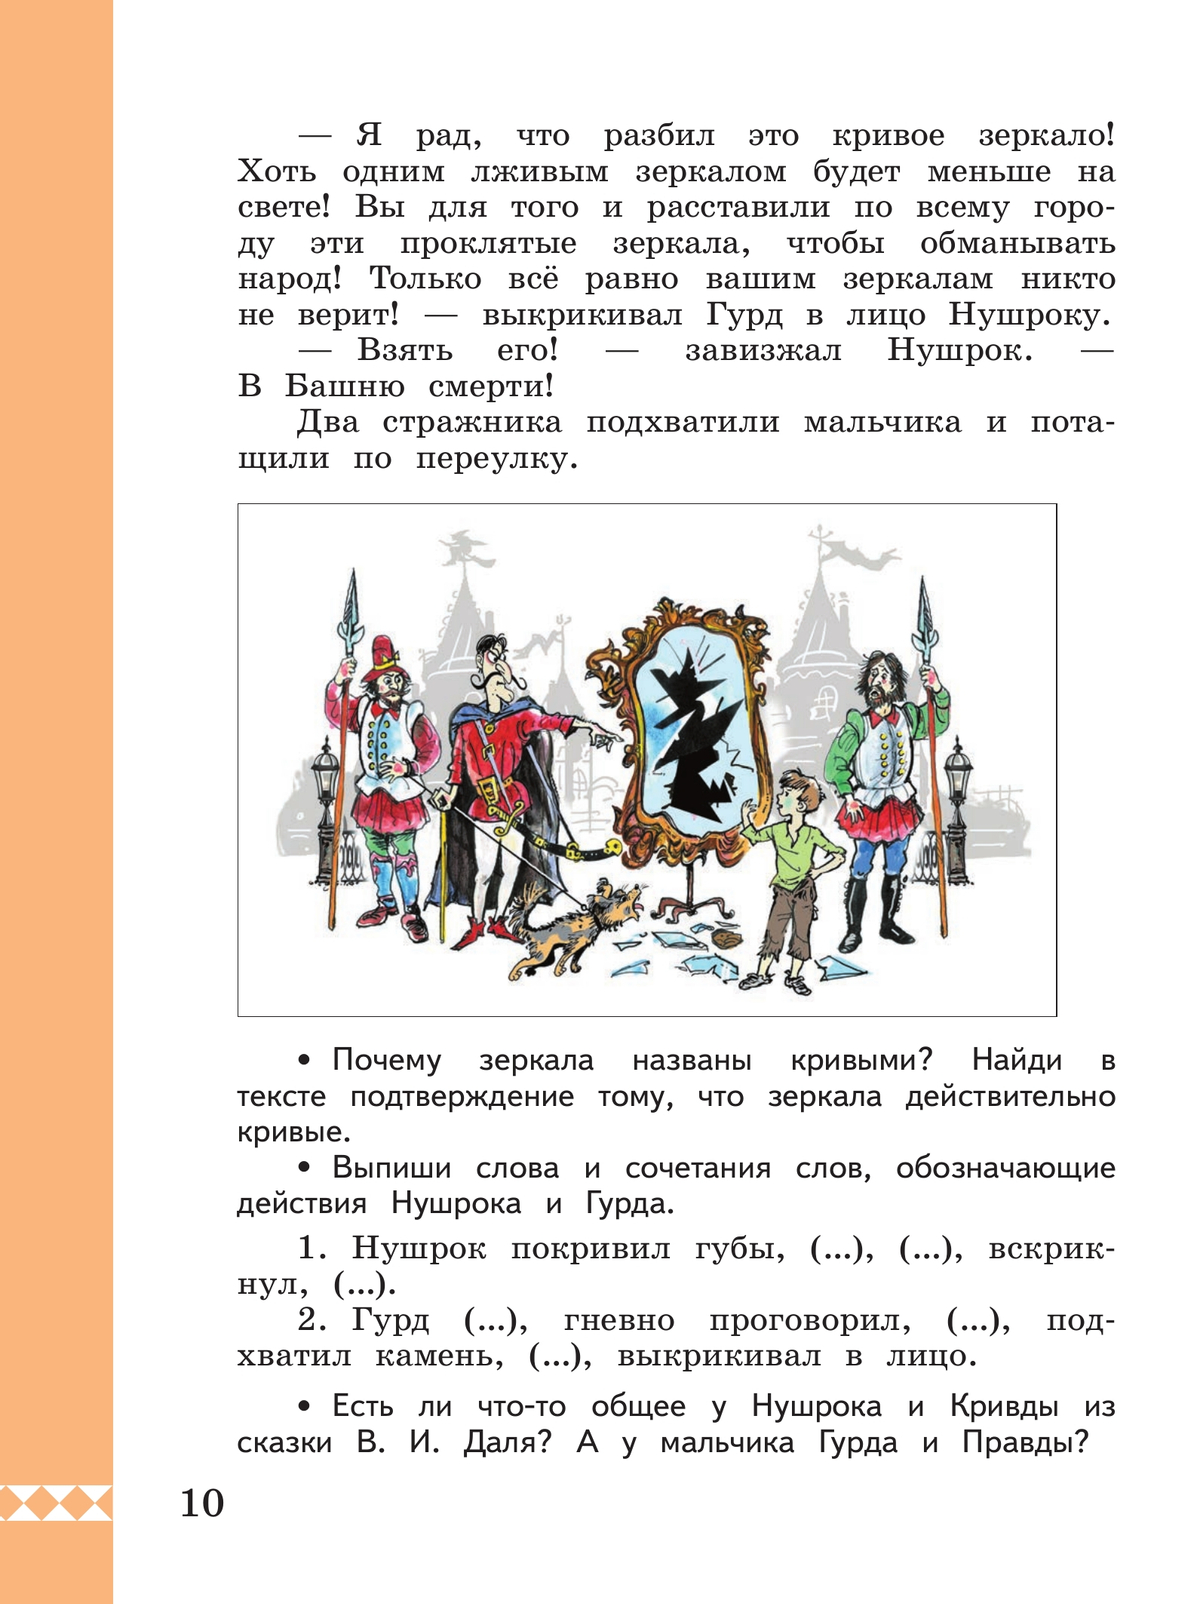 Русский родной язык. 3 класс. Учебник 4